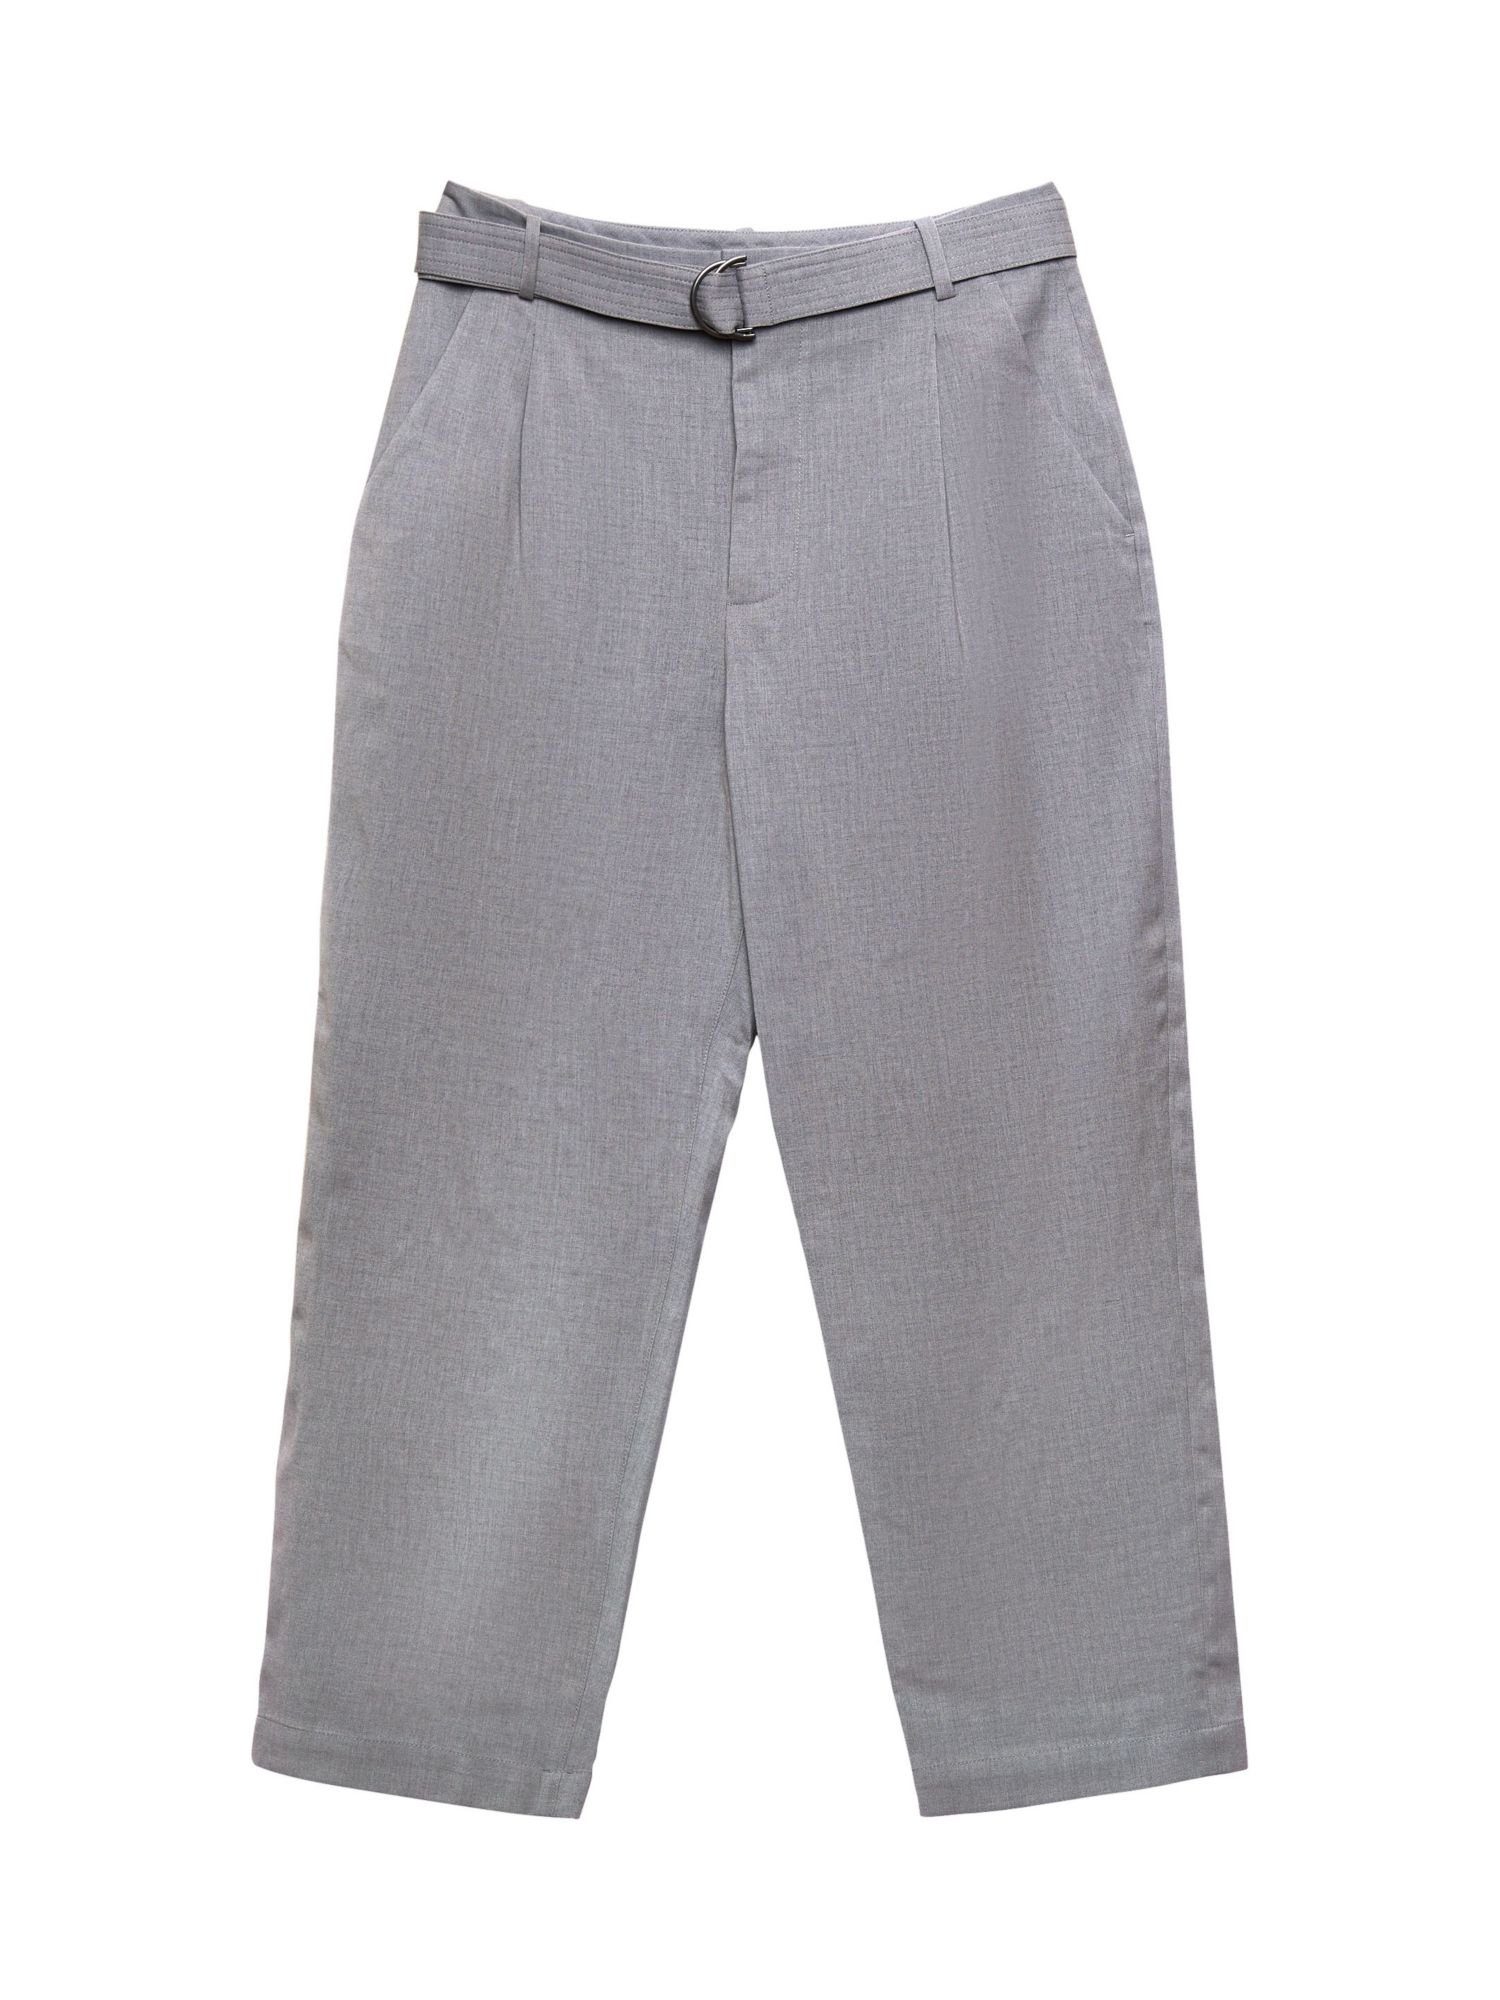 Esprit Collection Anzughose Hose mit weitem Bein und Gürtel, Wollmix LIGHT GUNMETAL